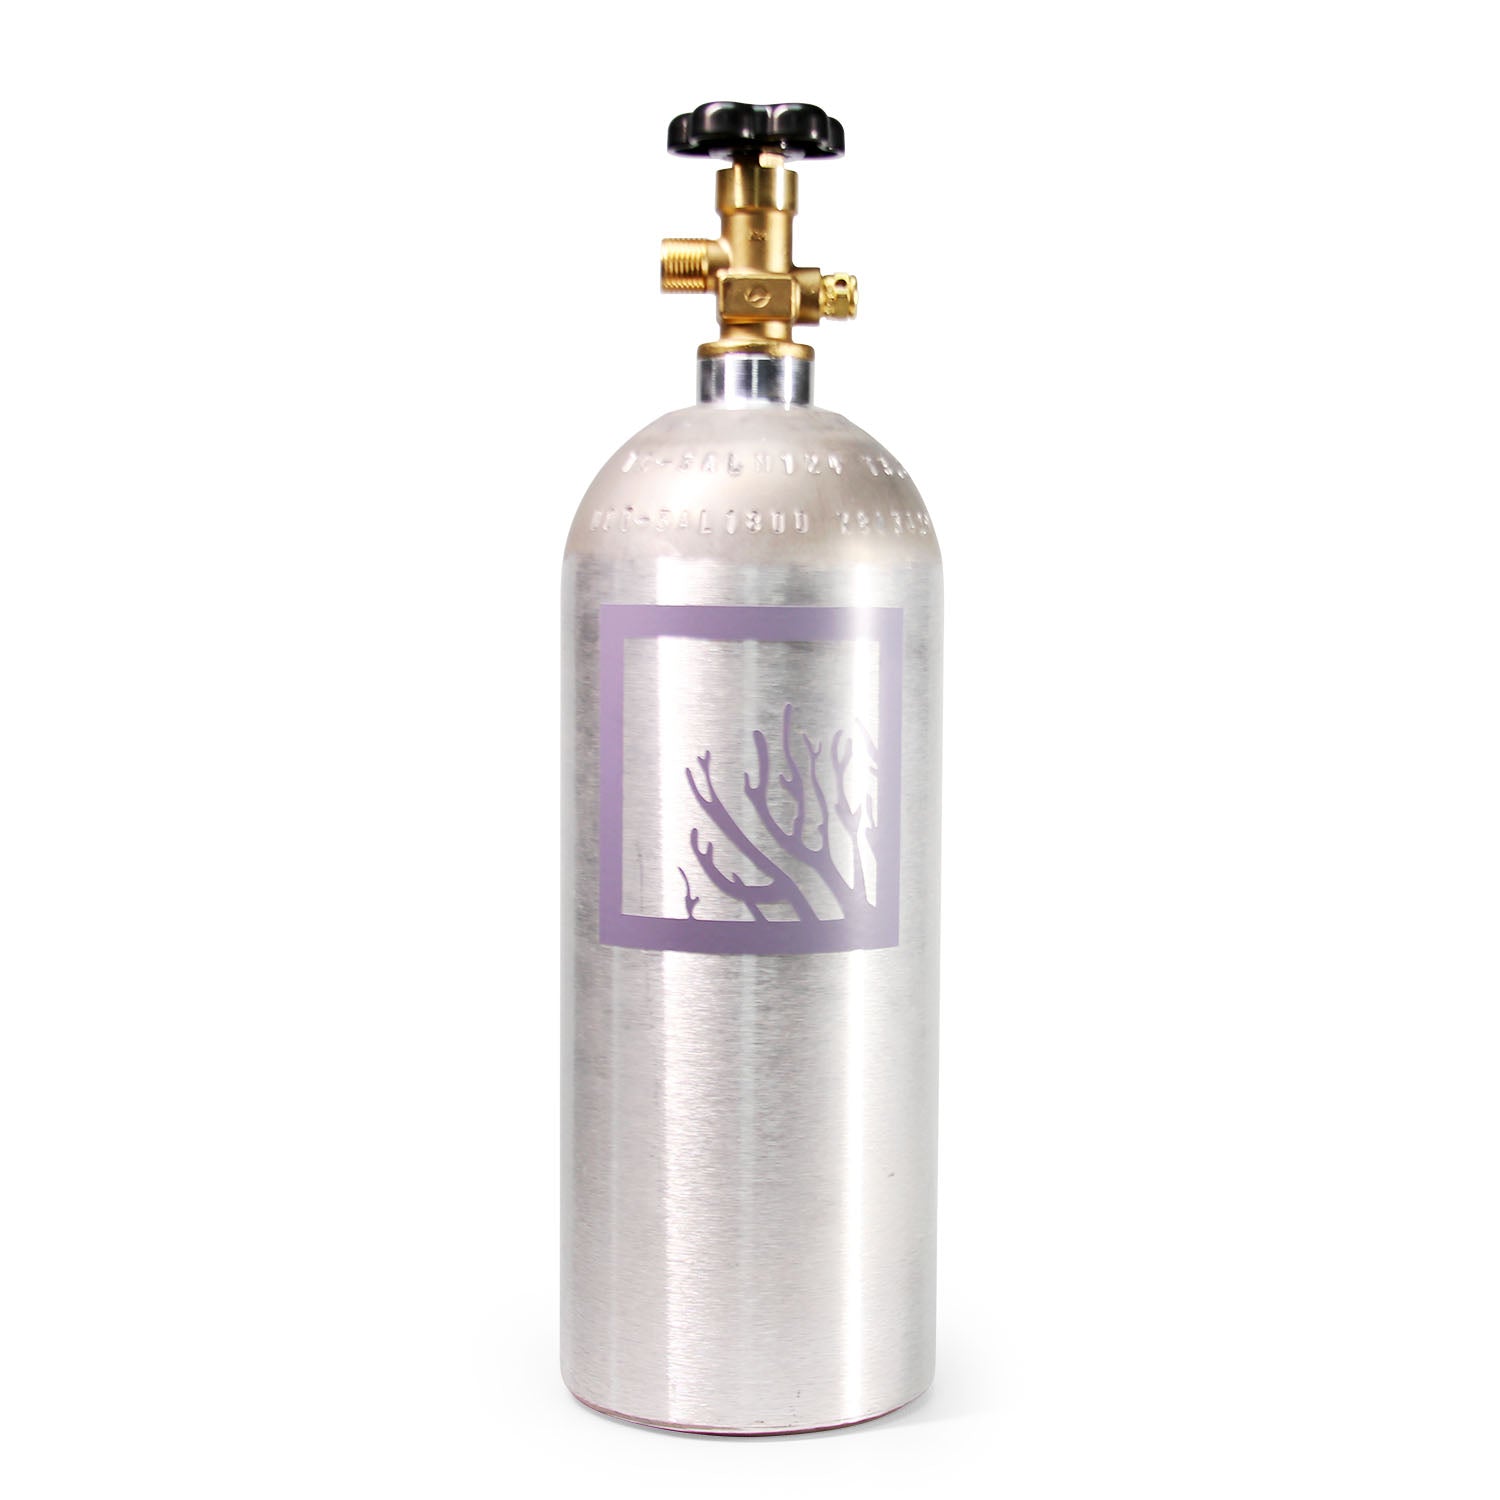 SR Aquaristik 5lbs CO2 Bottle Fill or Exchange (Pick Up Only)